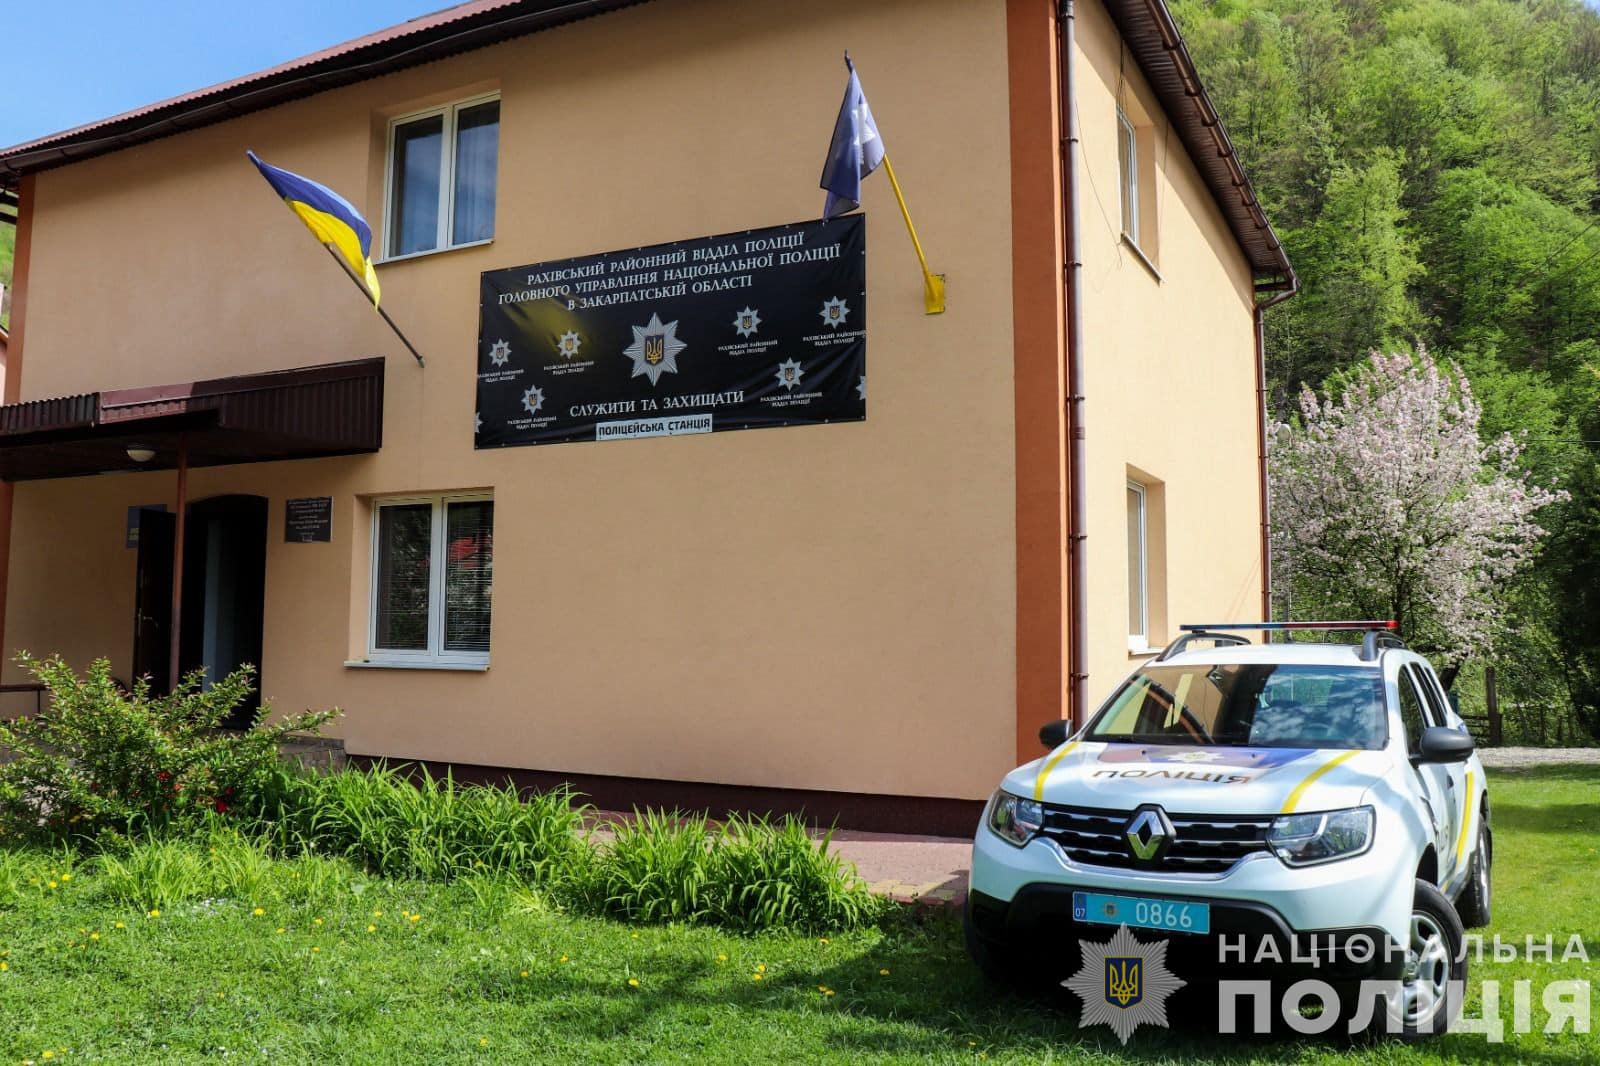 Цього тижня заступник начальника Головного управління Національної поліції в Закарпатській області анонсував роботу трьох поліцейських станцій в підтримку реалізації спільного проєкту «Поліцейський офіцер громади» на території регіону.